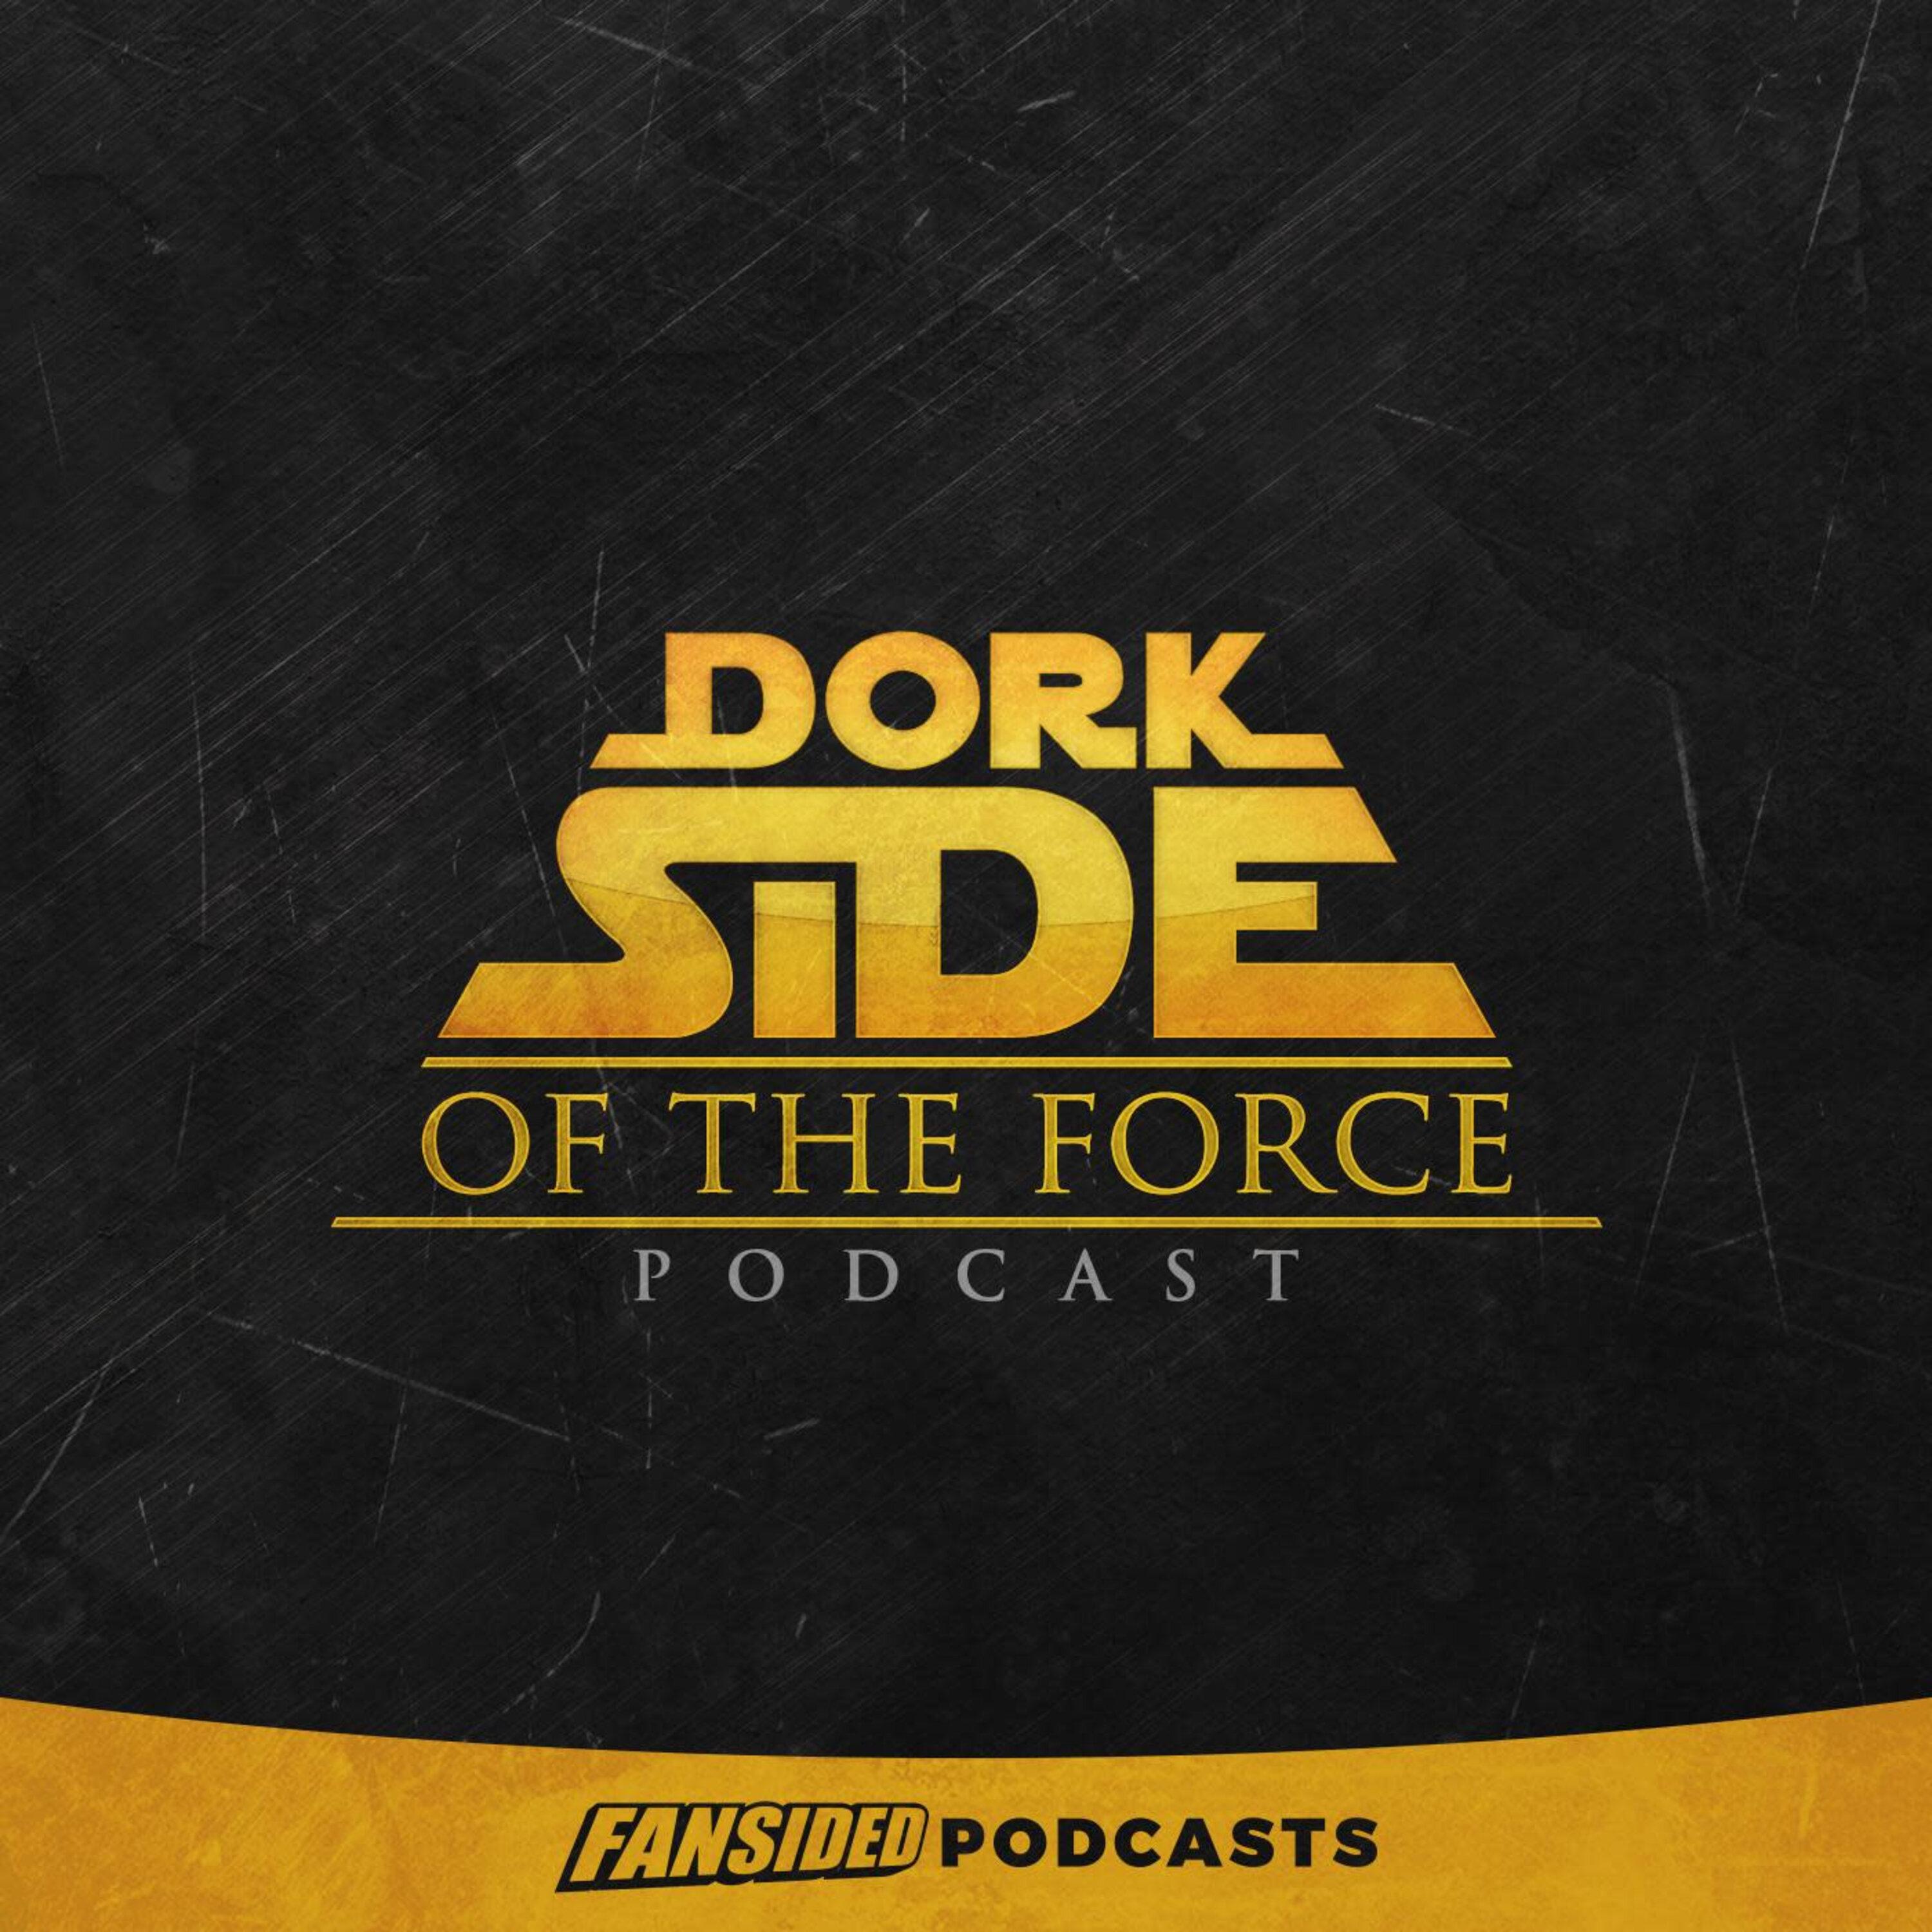 Dork Side of the Force Podcast on Star Wars